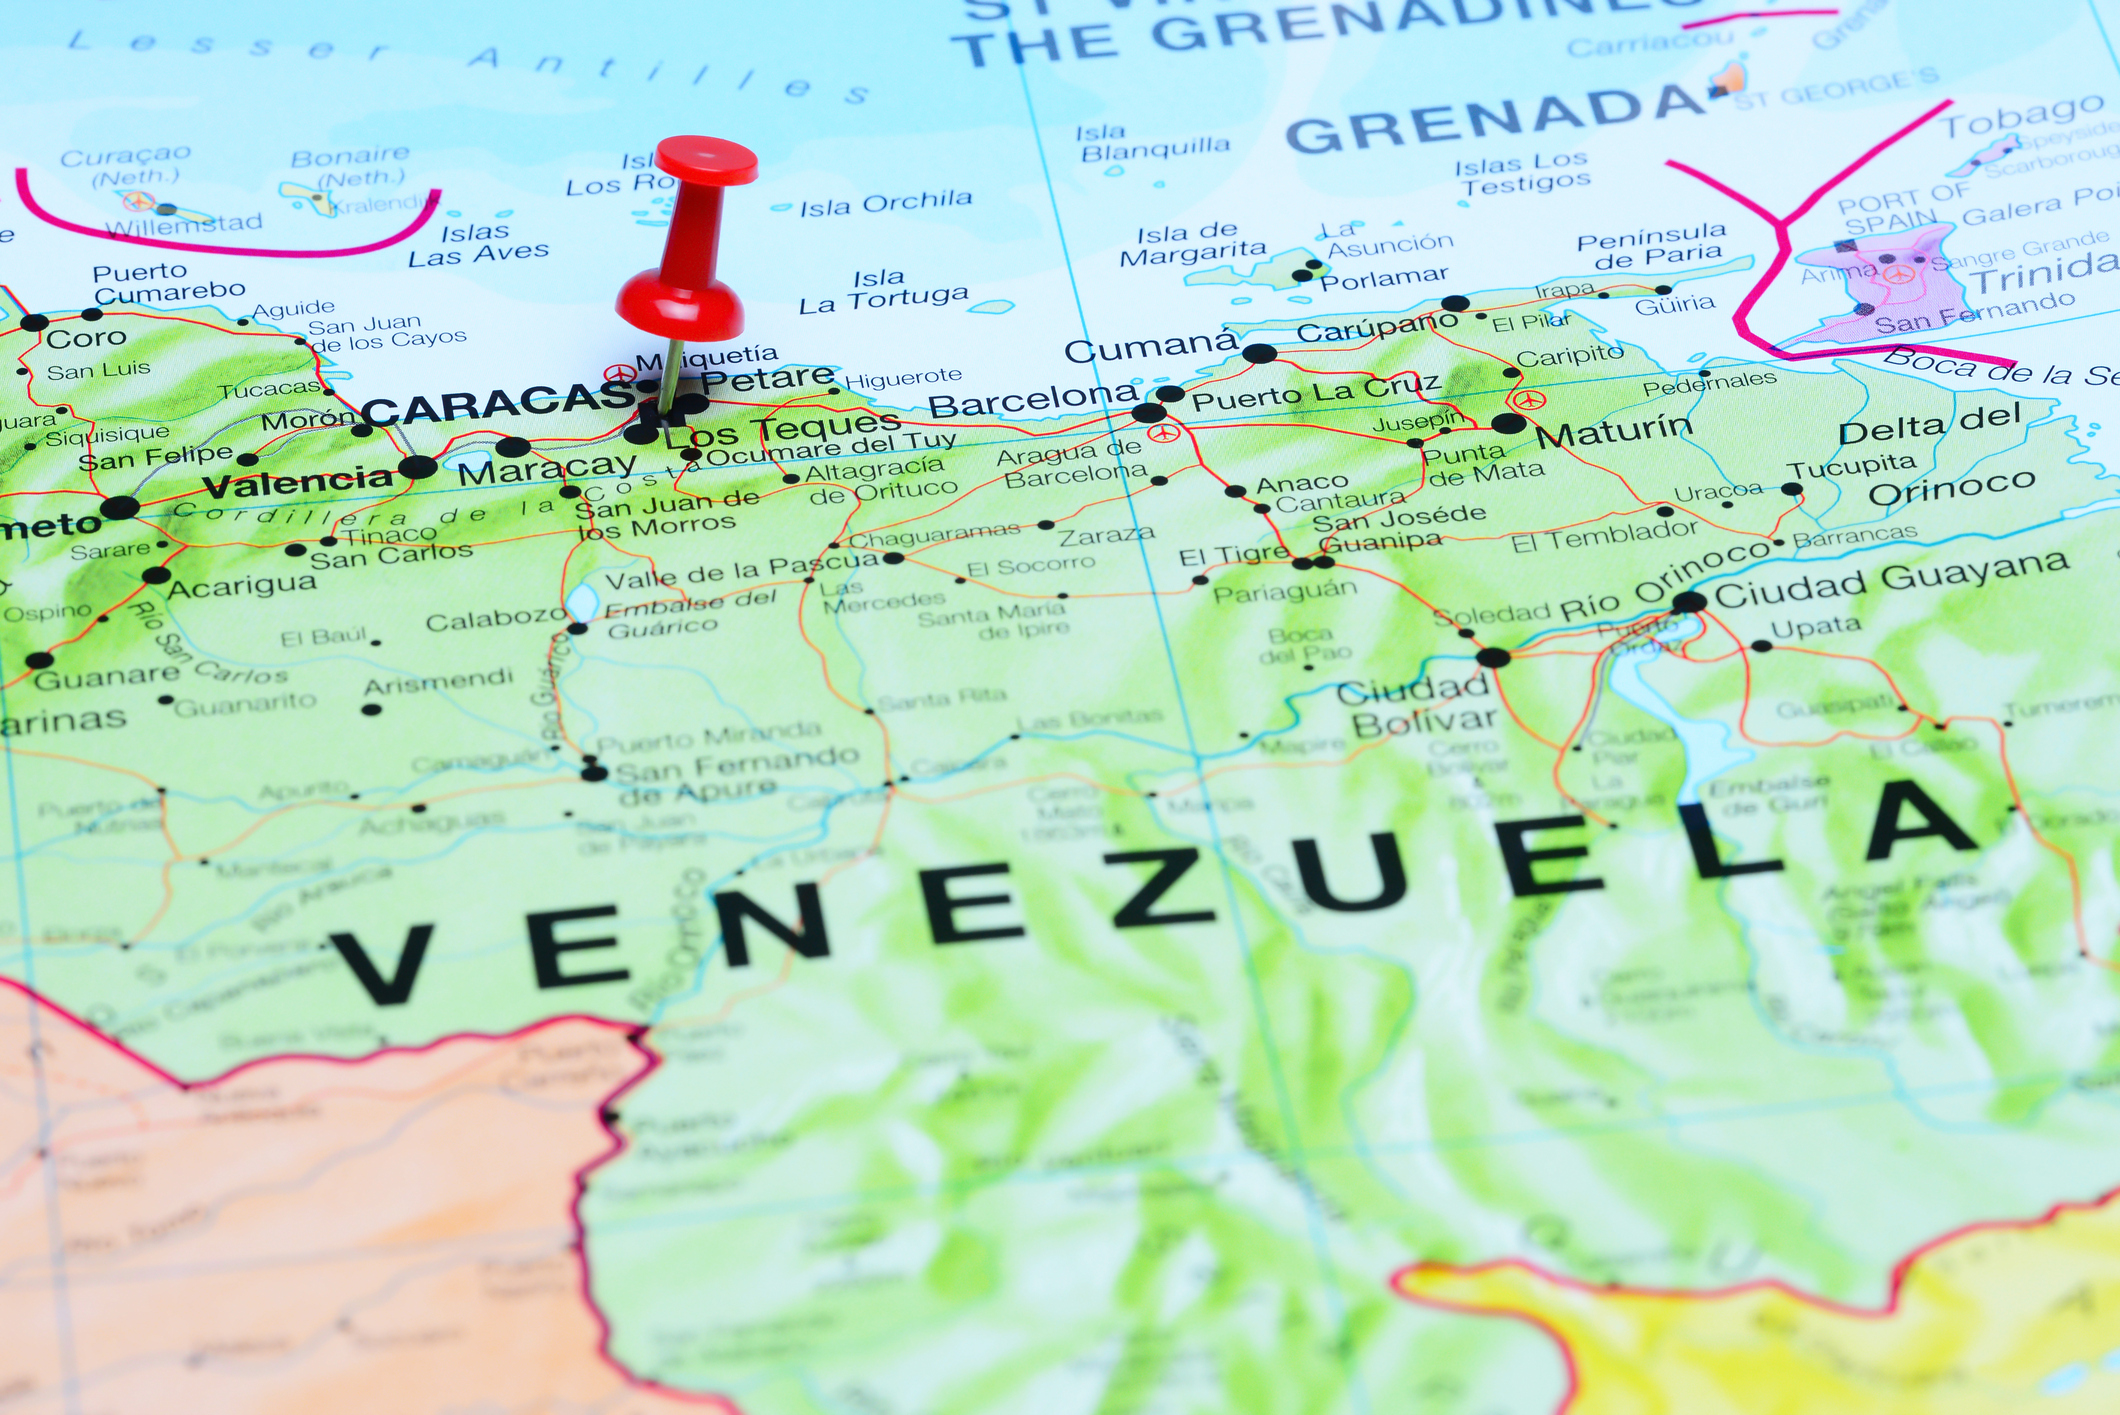 Is it safe to travel to Venezuela? BT